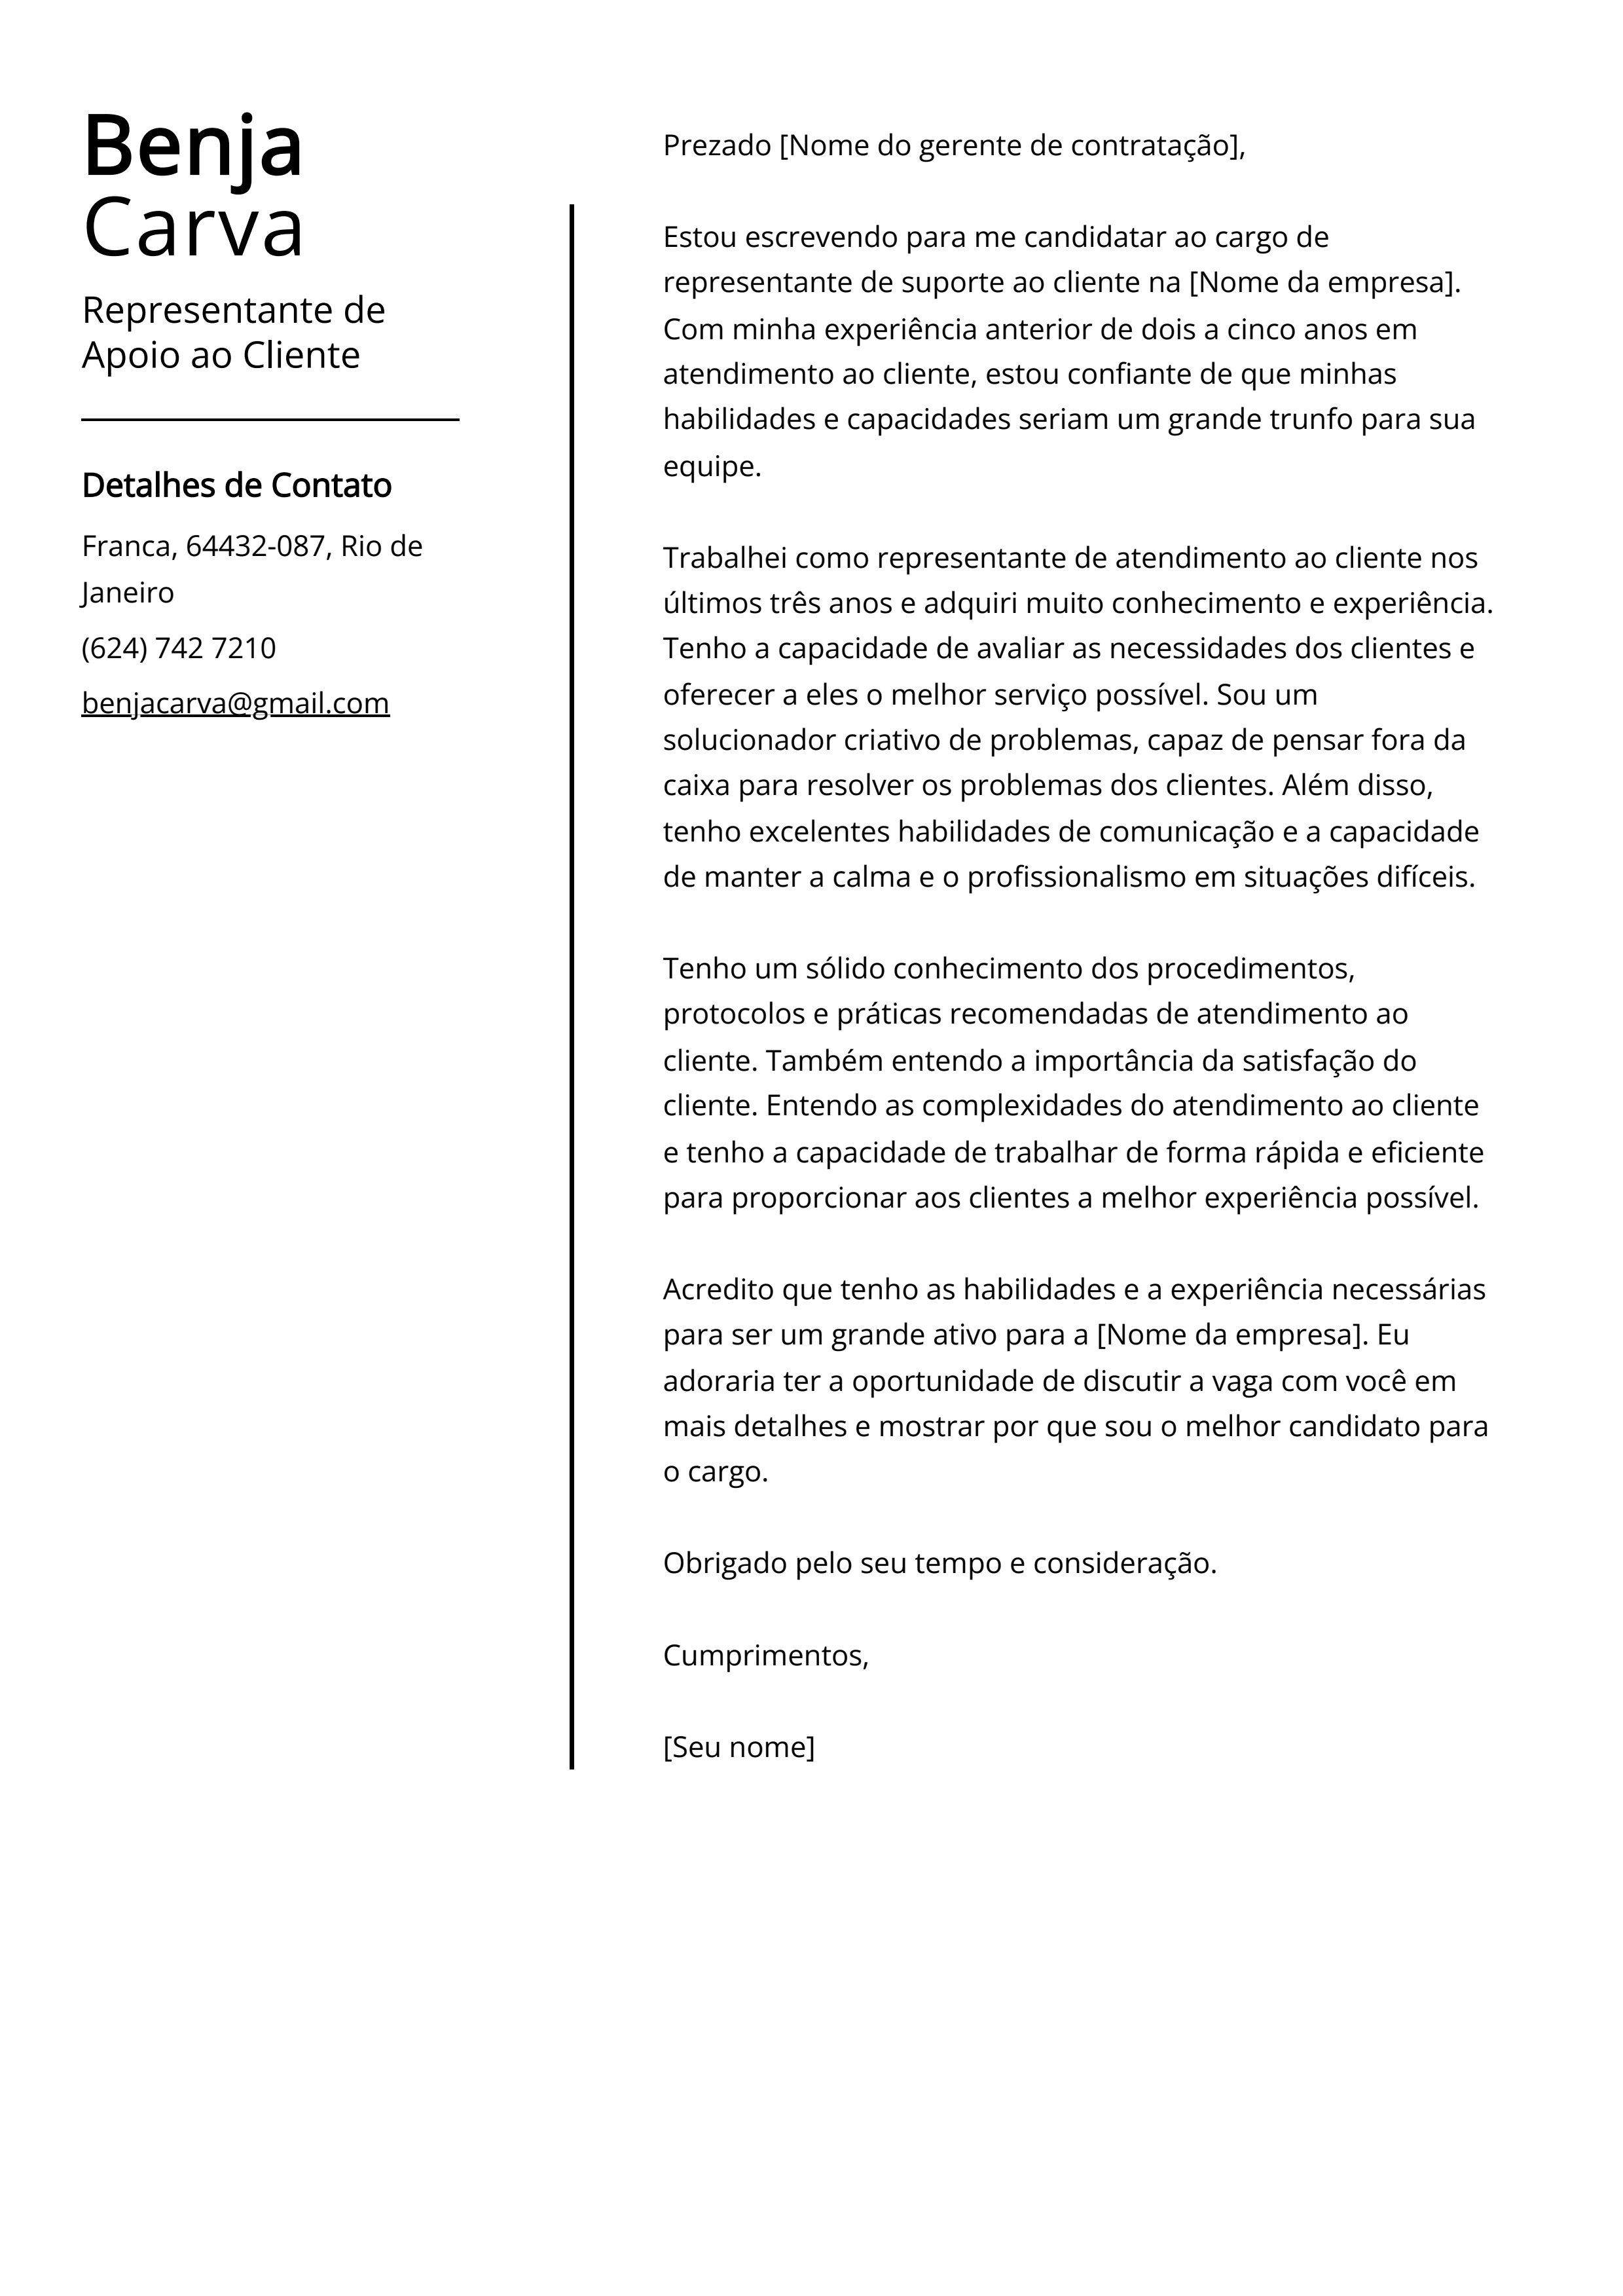 Exemplo de carta de apresentação do Representante de Apoio ao Cliente